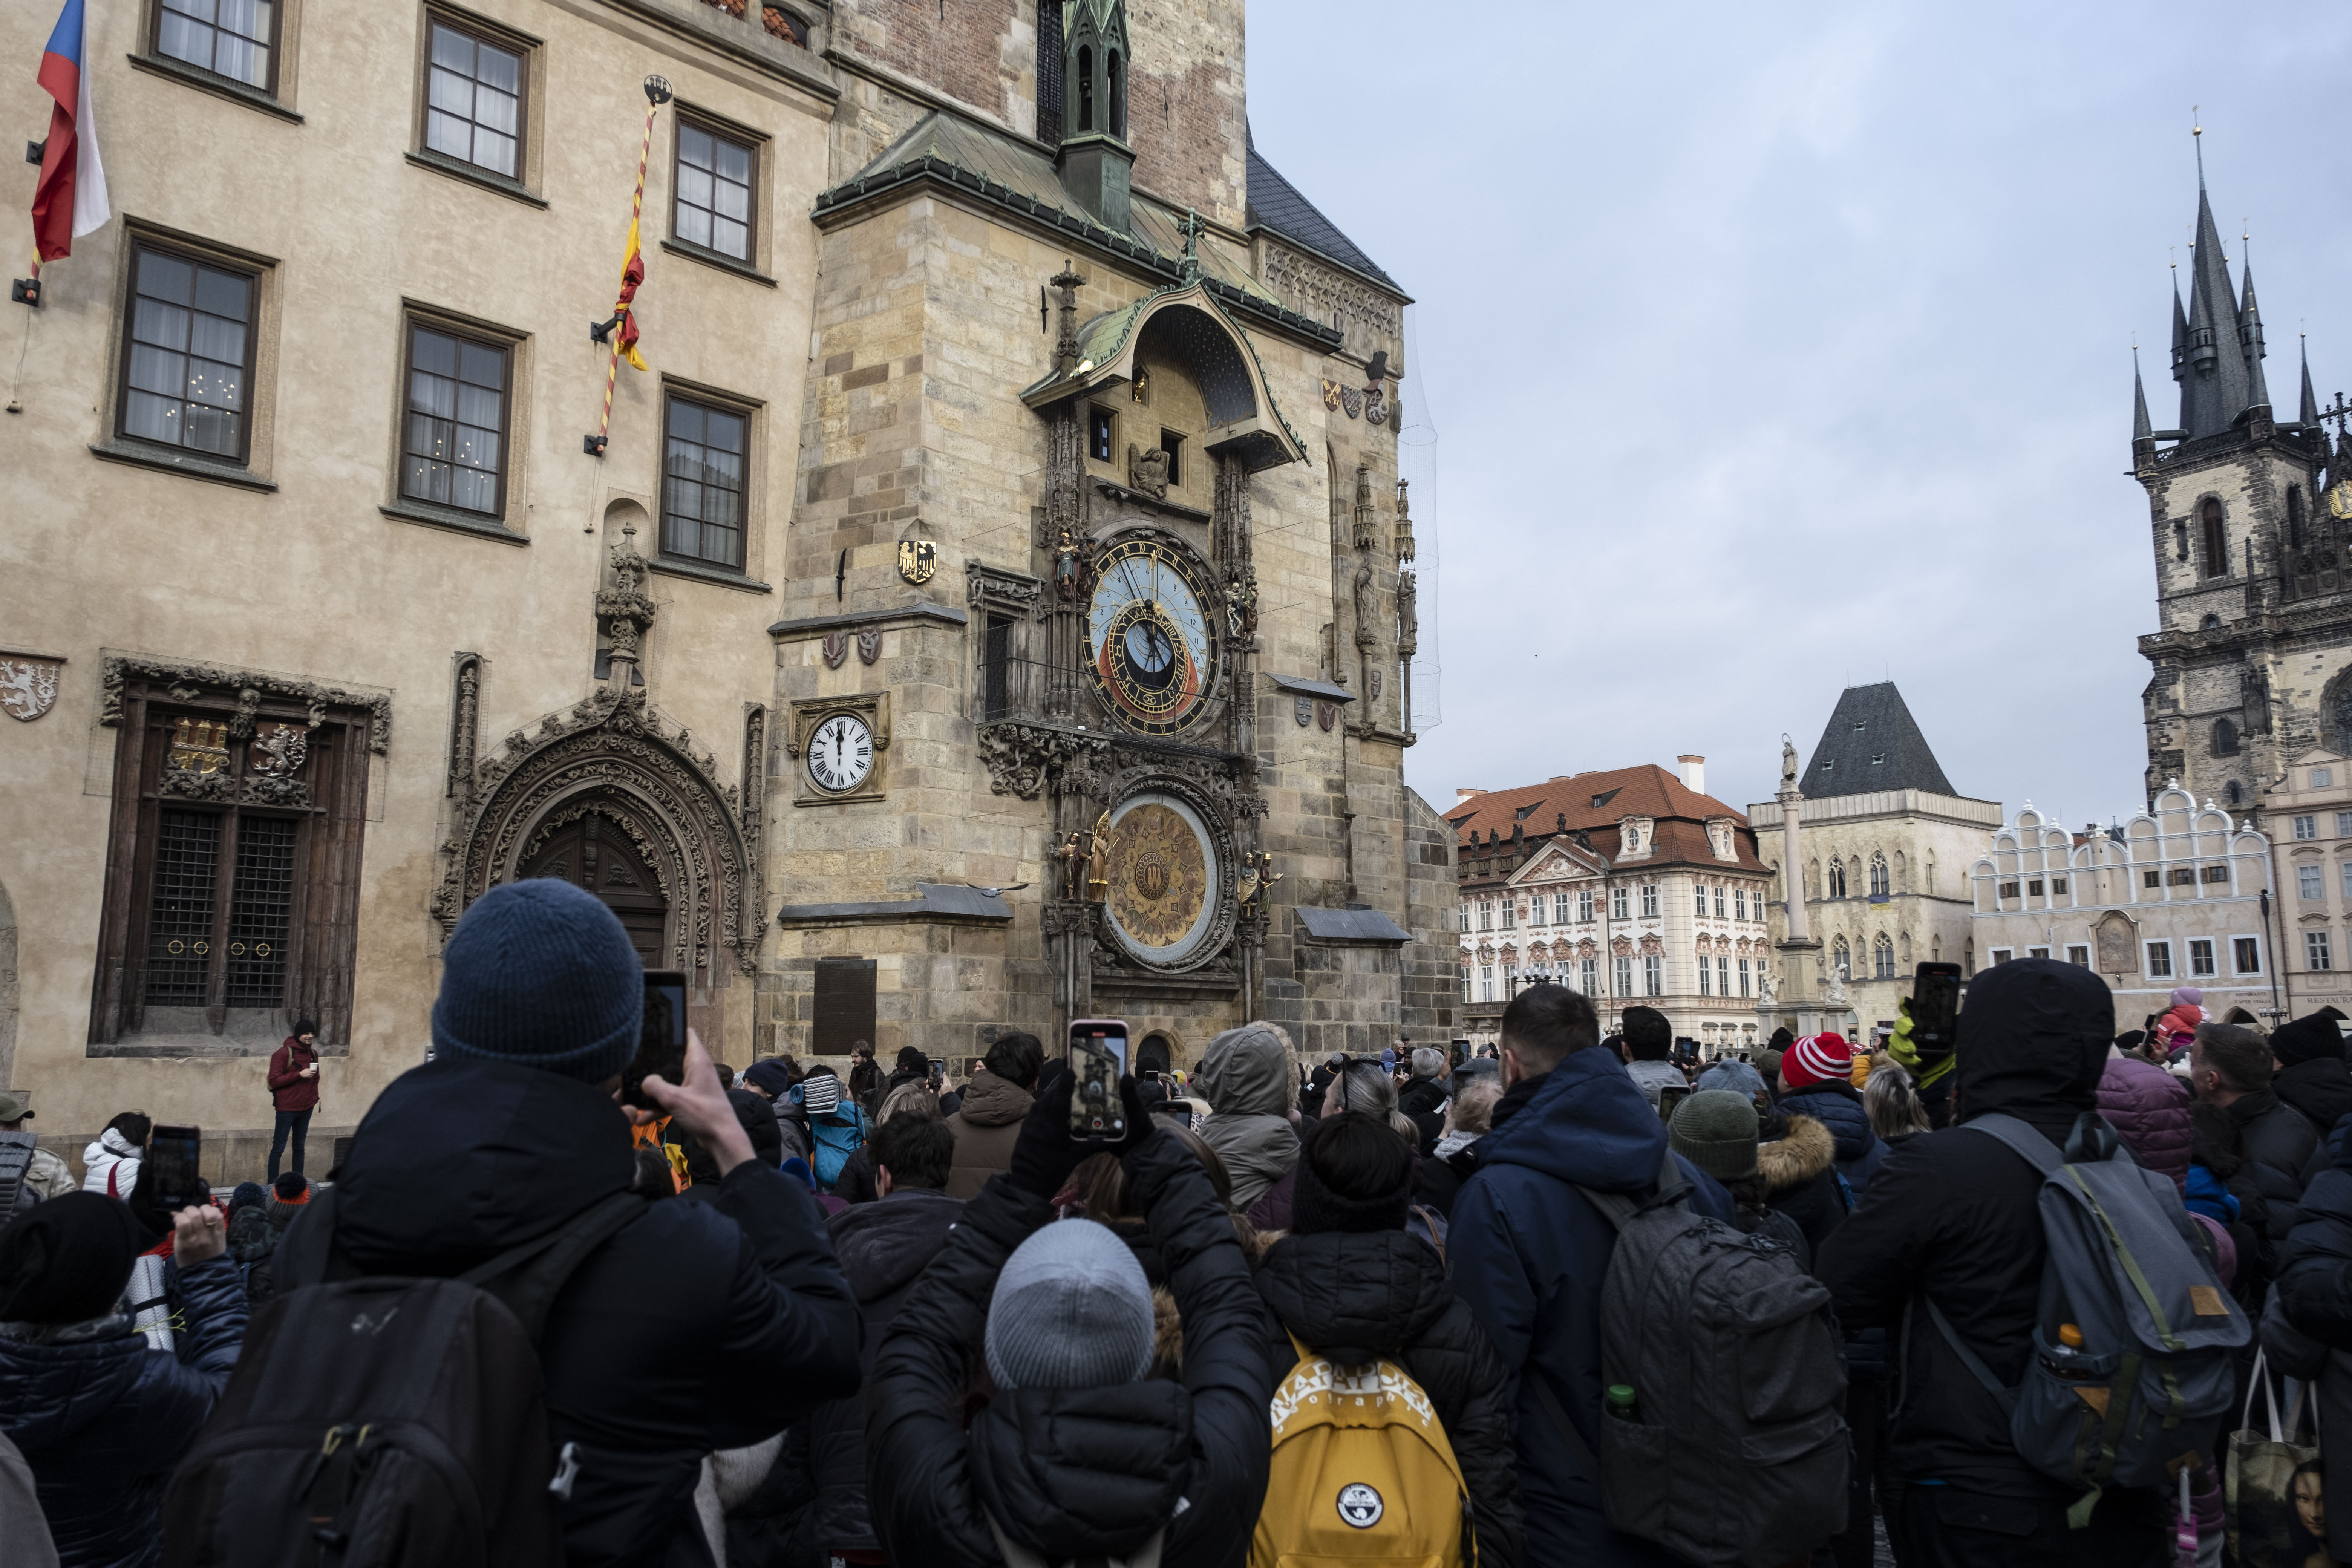 1410 yılında inşa edilen ve dünyanın en eski üçüncü astronomik saati olma özelliğini taşıyan saat, Eski Belediye Sarayı'nın güney cephesinde yer alıyor.